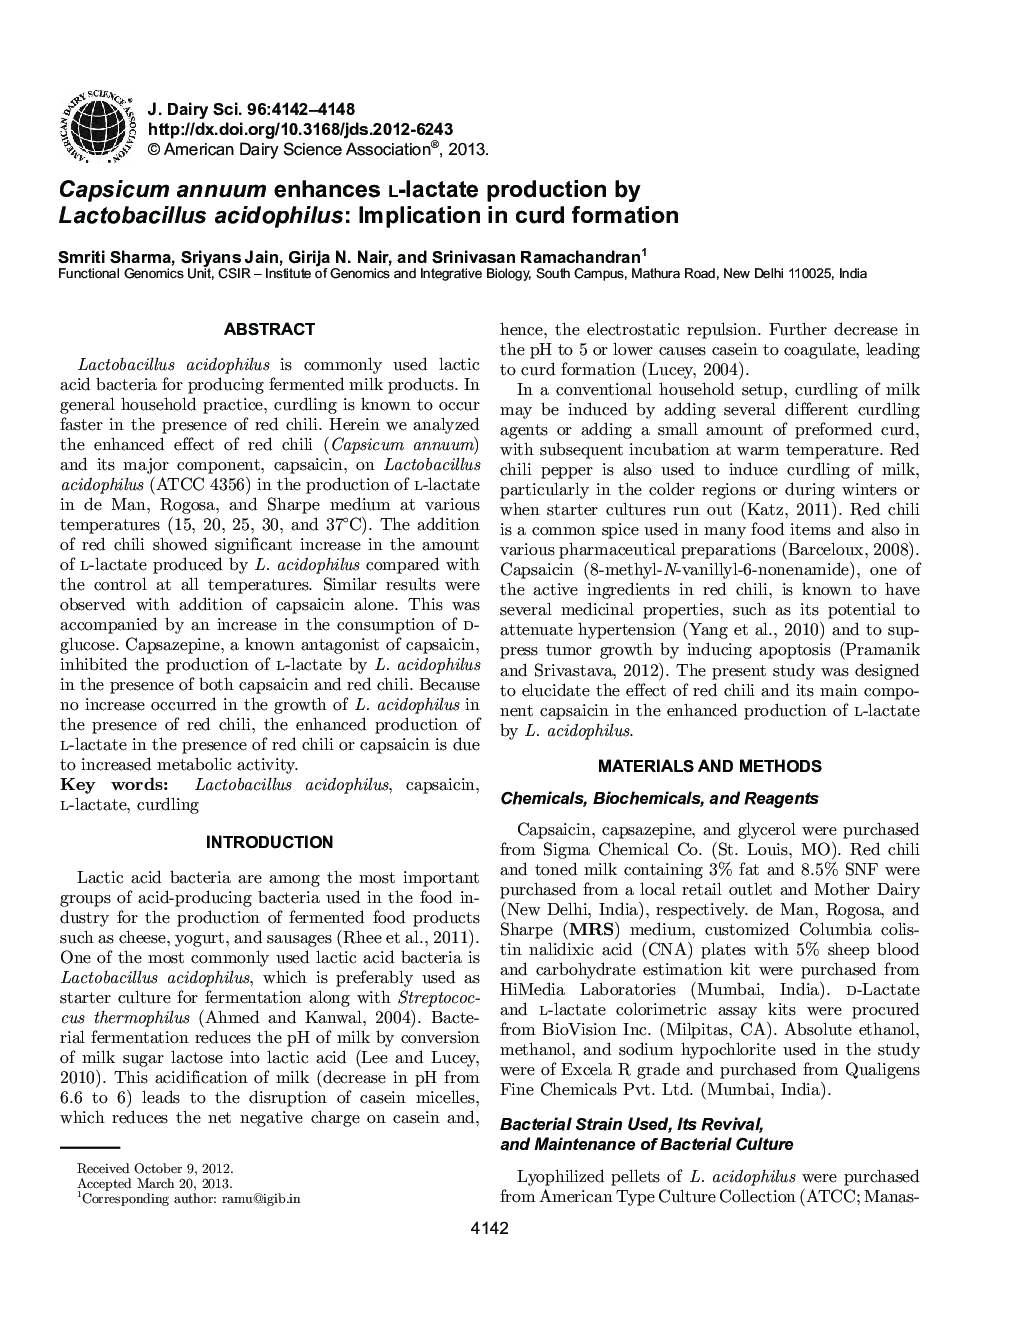 Capsicum annuum enhances l-lactate production by Lactobacillus acidophilus: Implication in curd formation